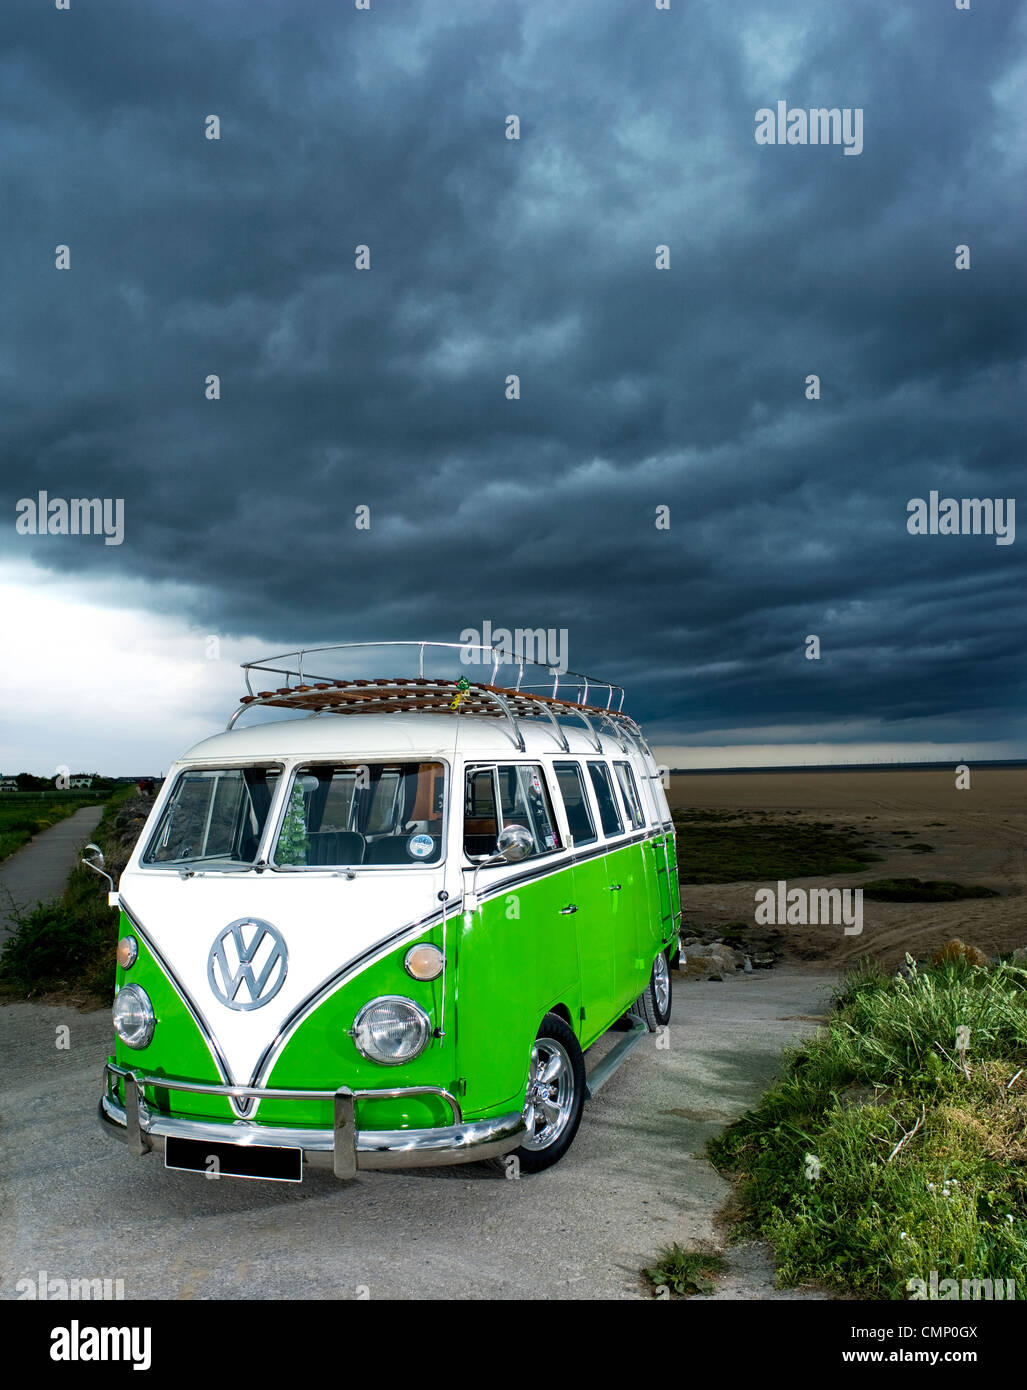 The Ultimate VW Camper Beer Cooler - VW Camper Blog